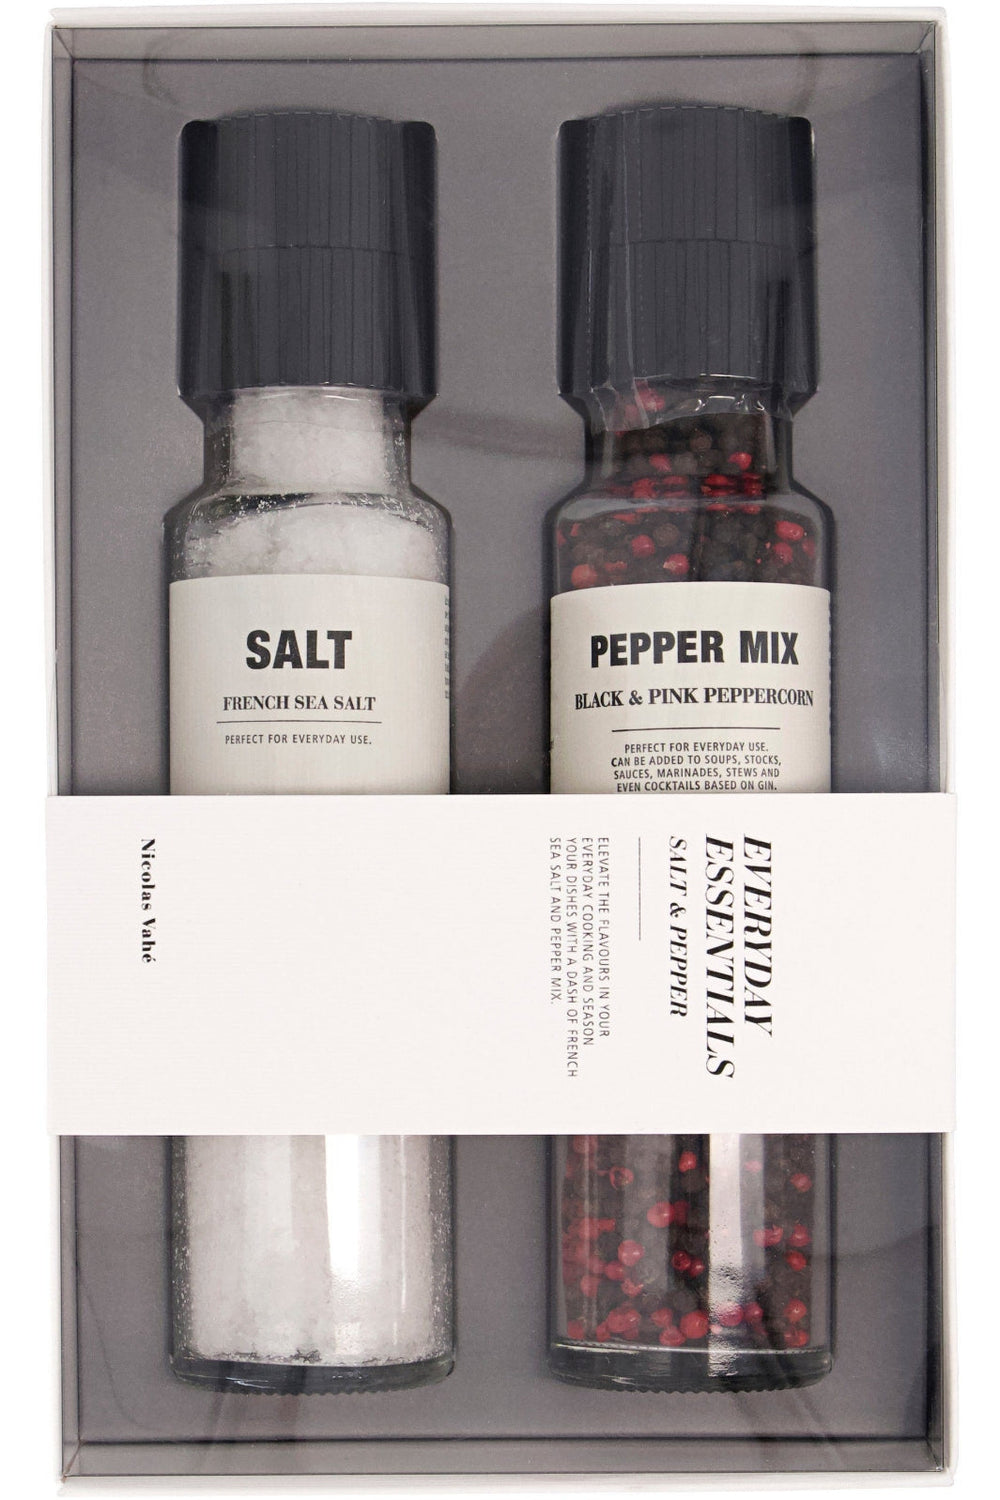 Nicolas Vahe - Gaveæske Salt & Pepper Salt 